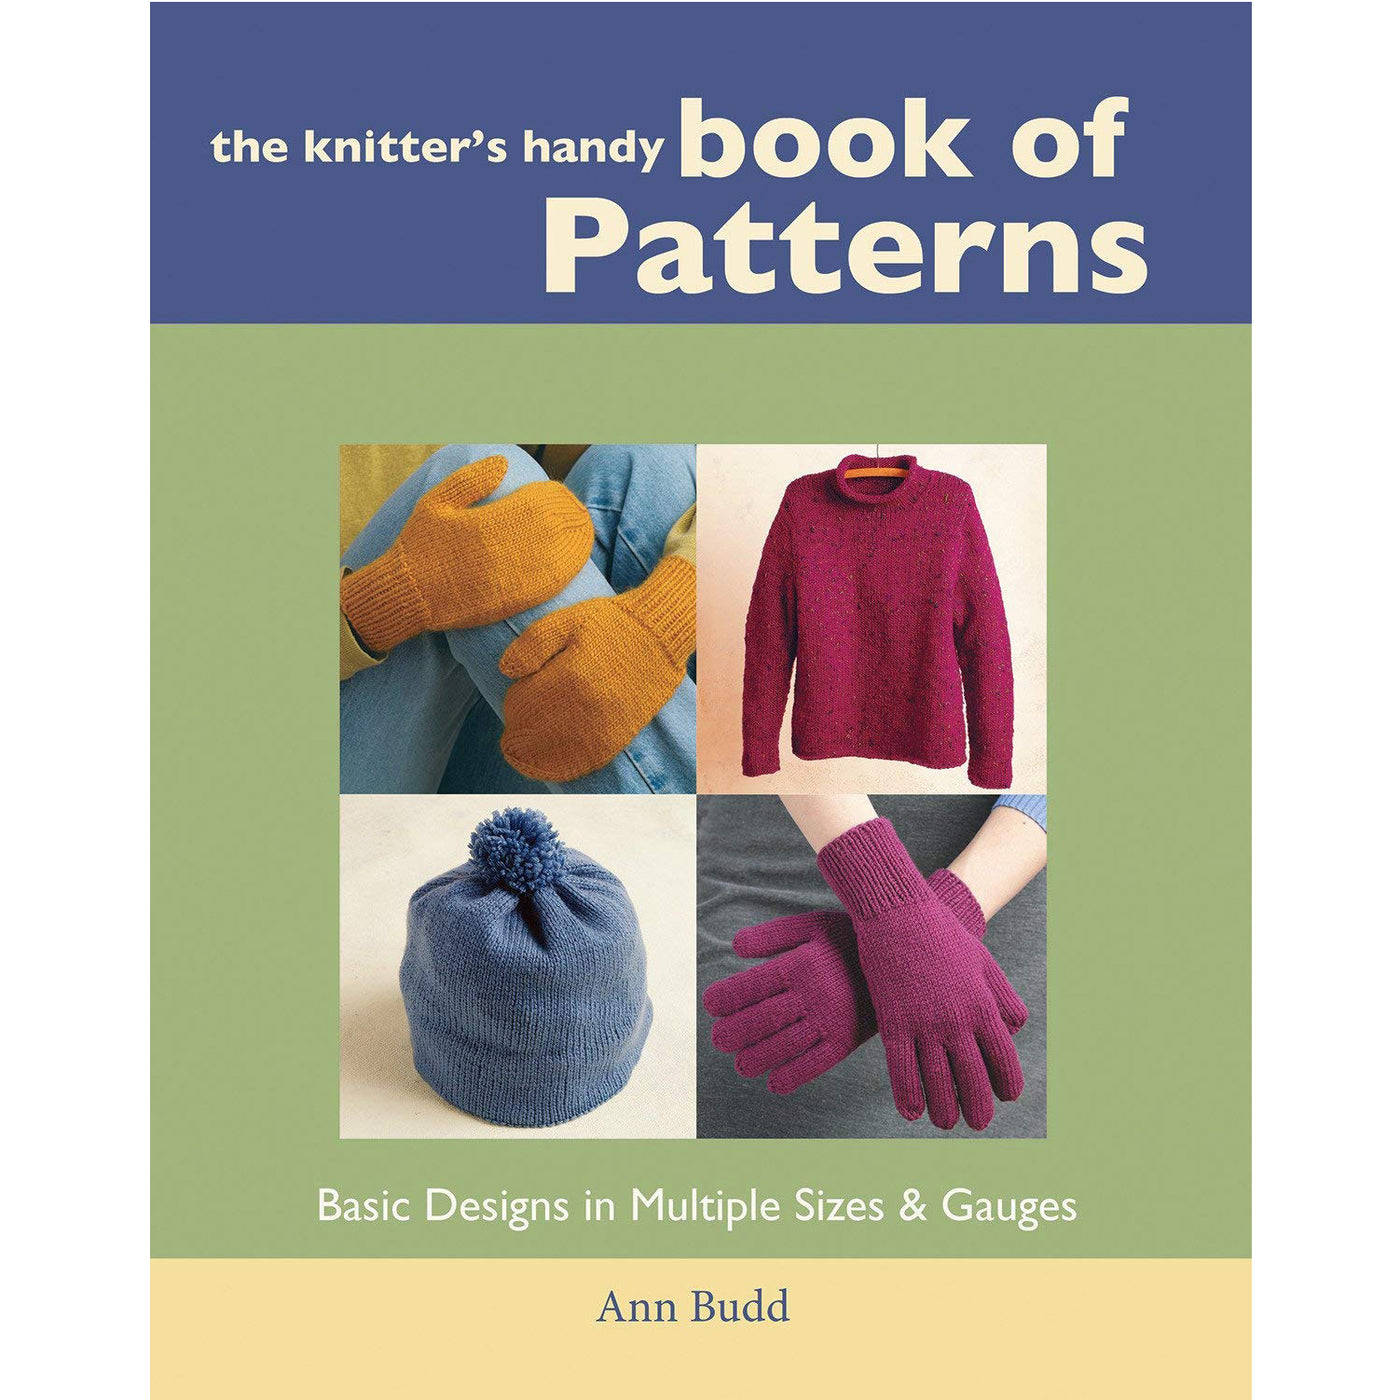 Knitter's Handy Book of Patterns (Ann Budd)